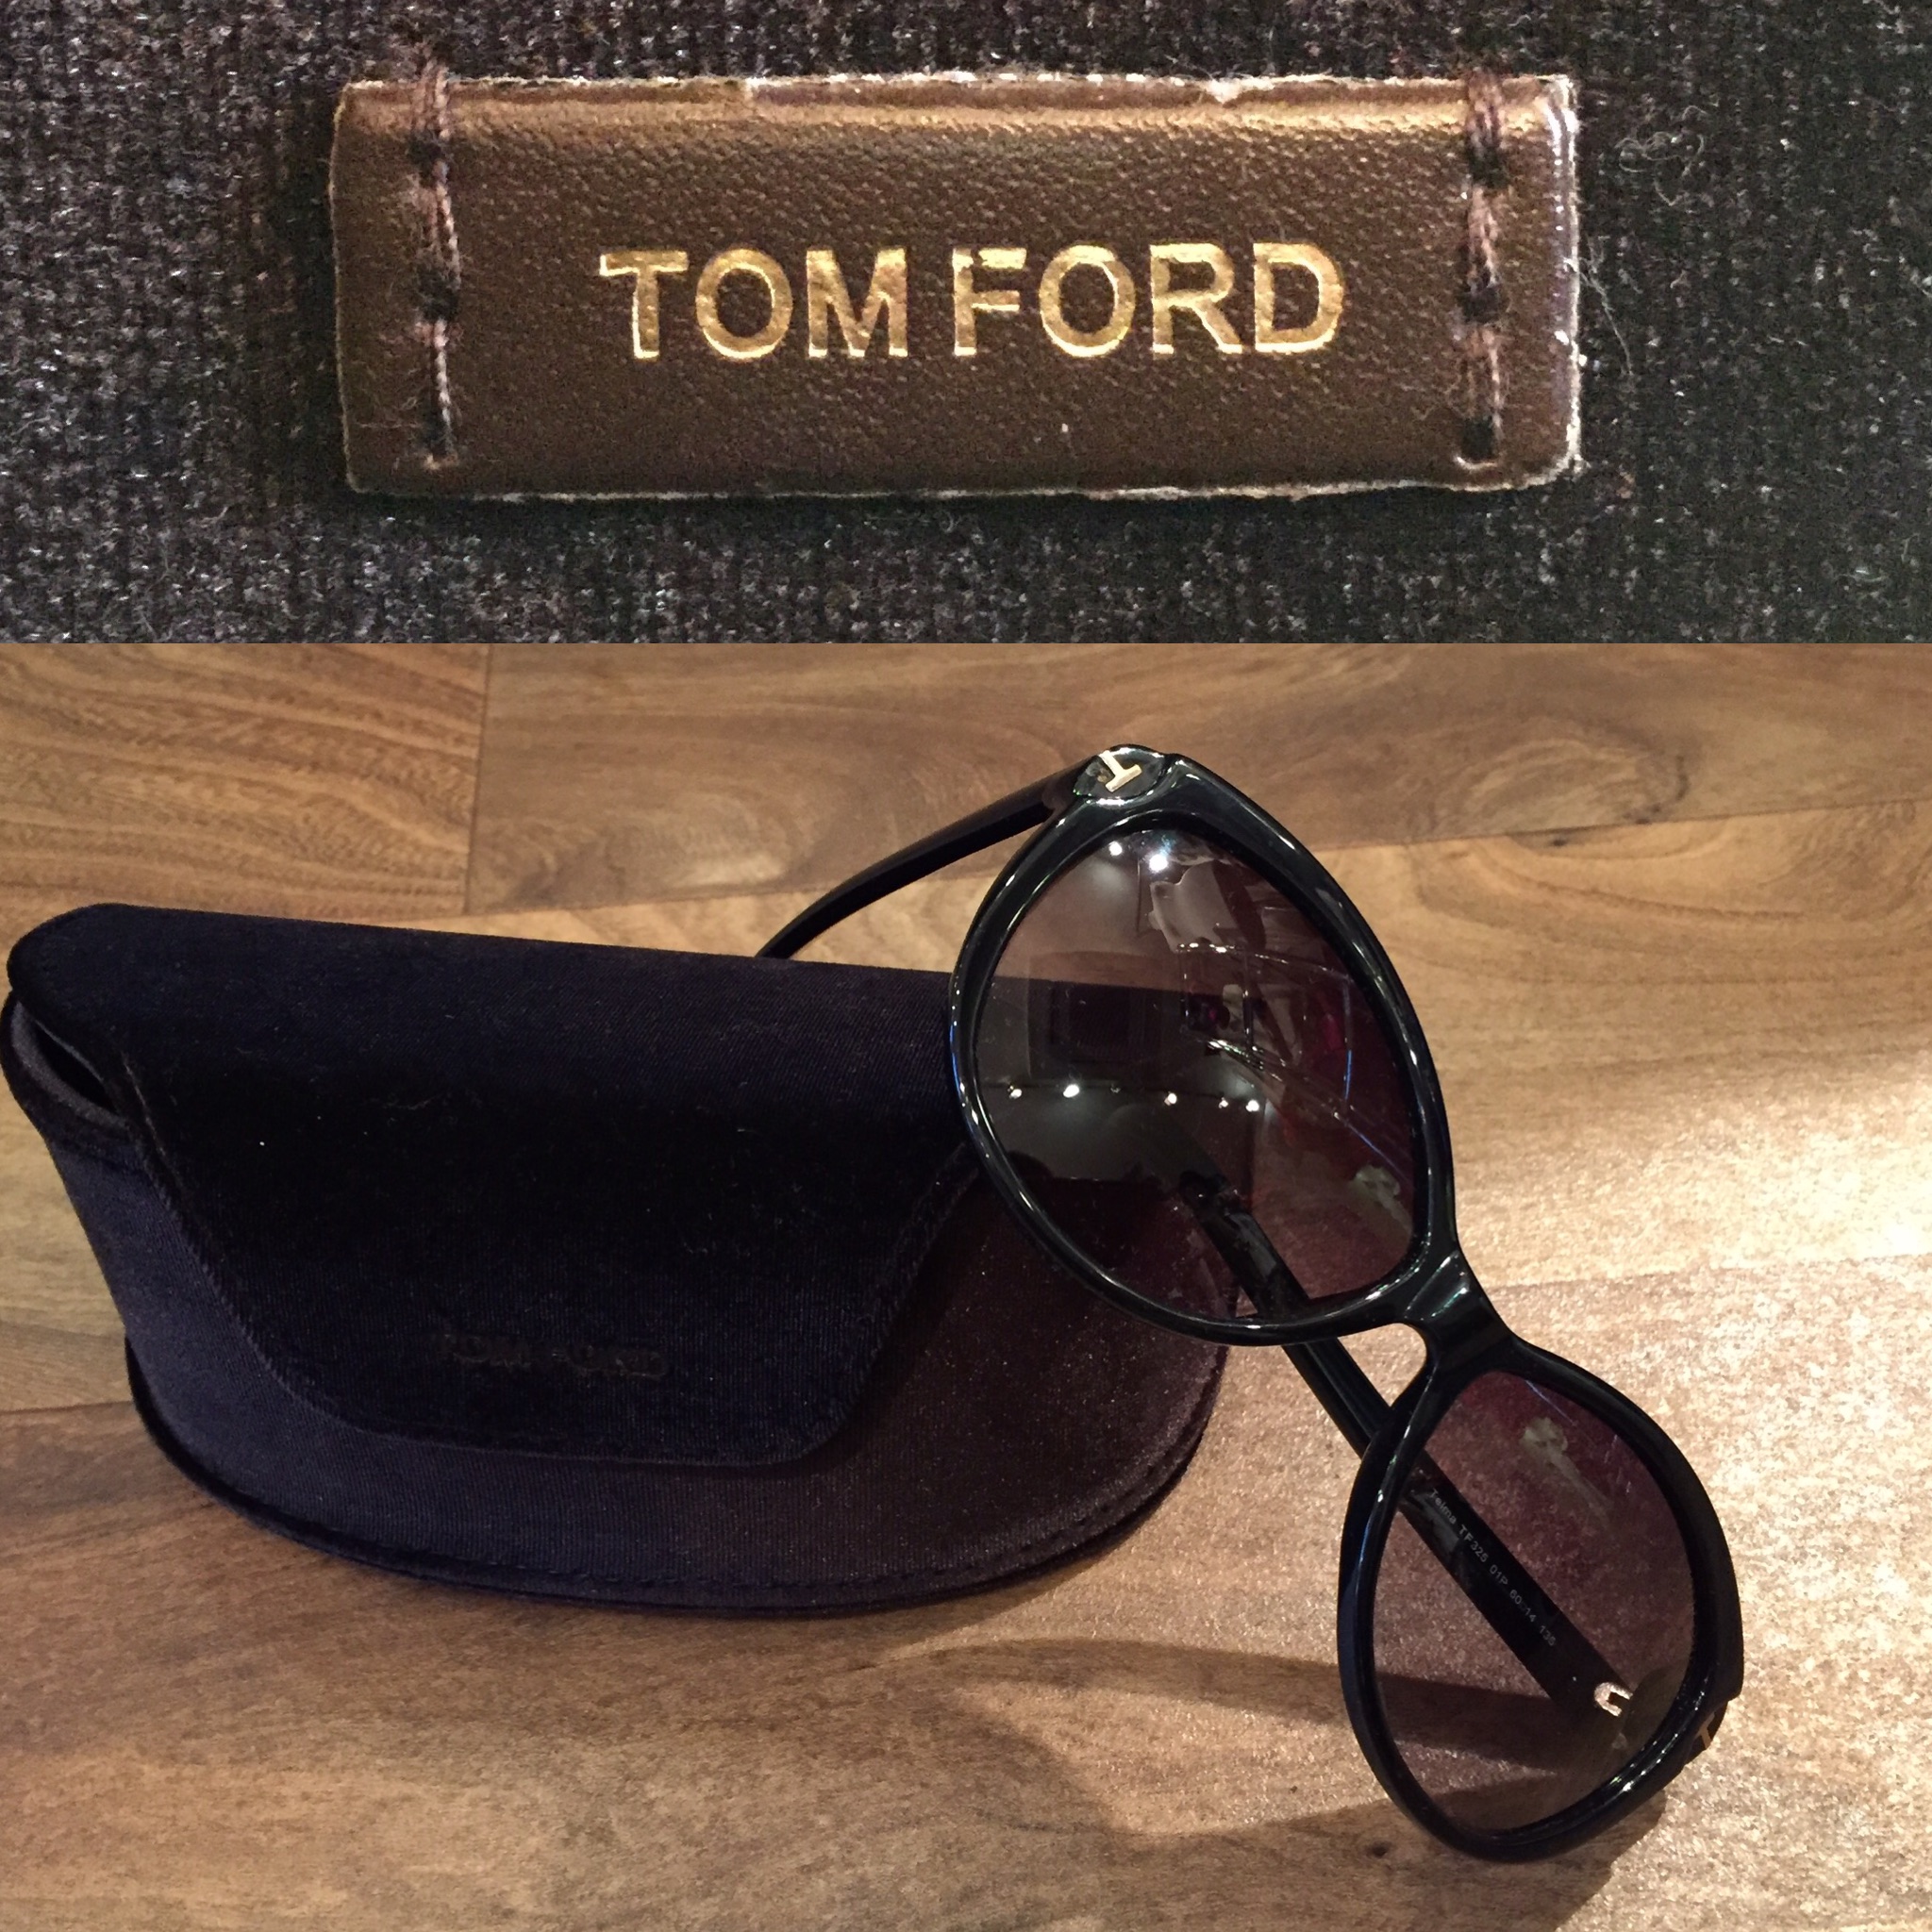 TomFord Glasses1.jpg